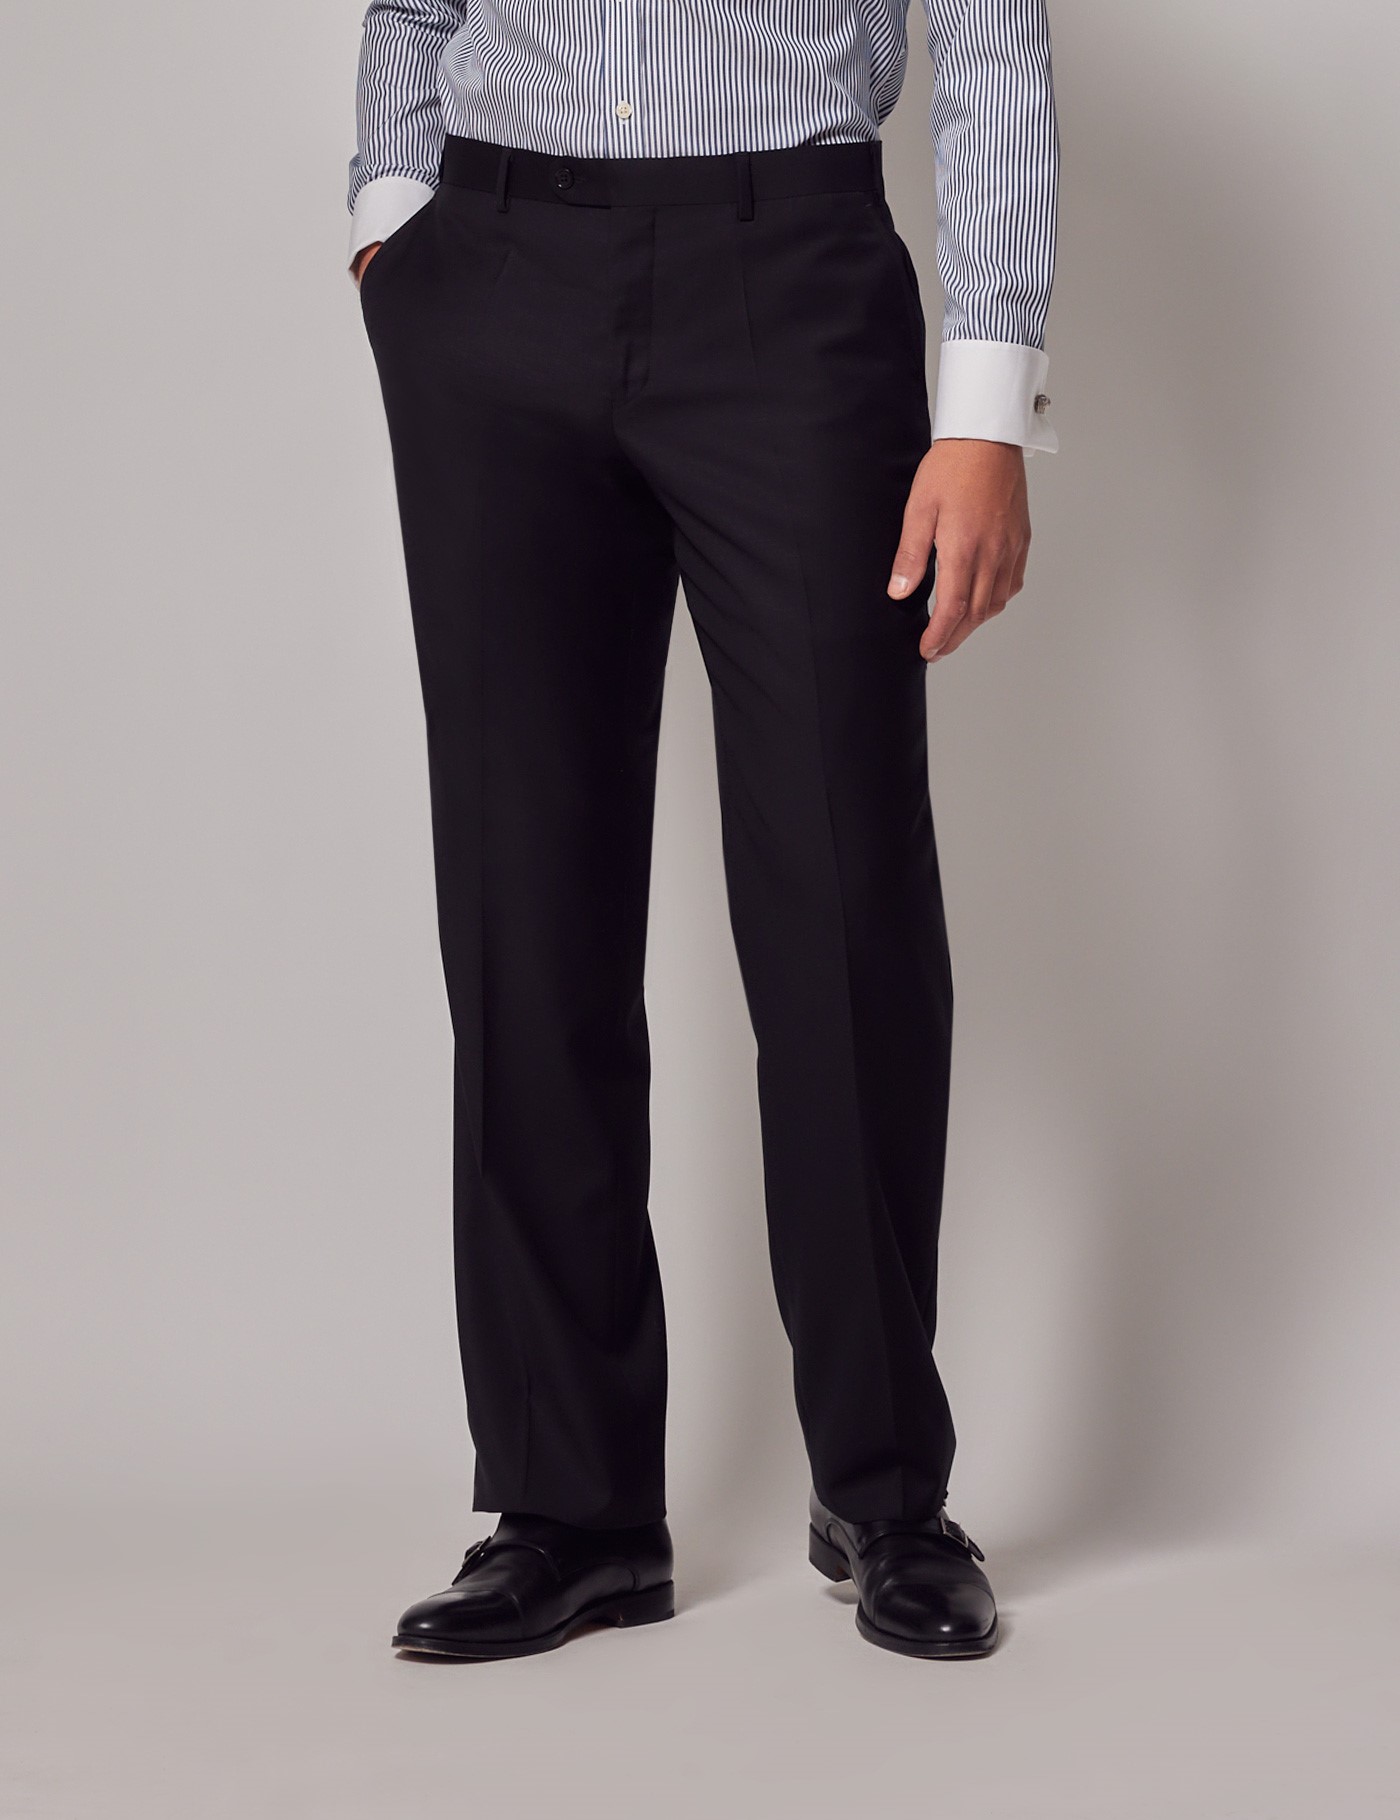 Men’s Black Twill Classic Fit Suit Pants